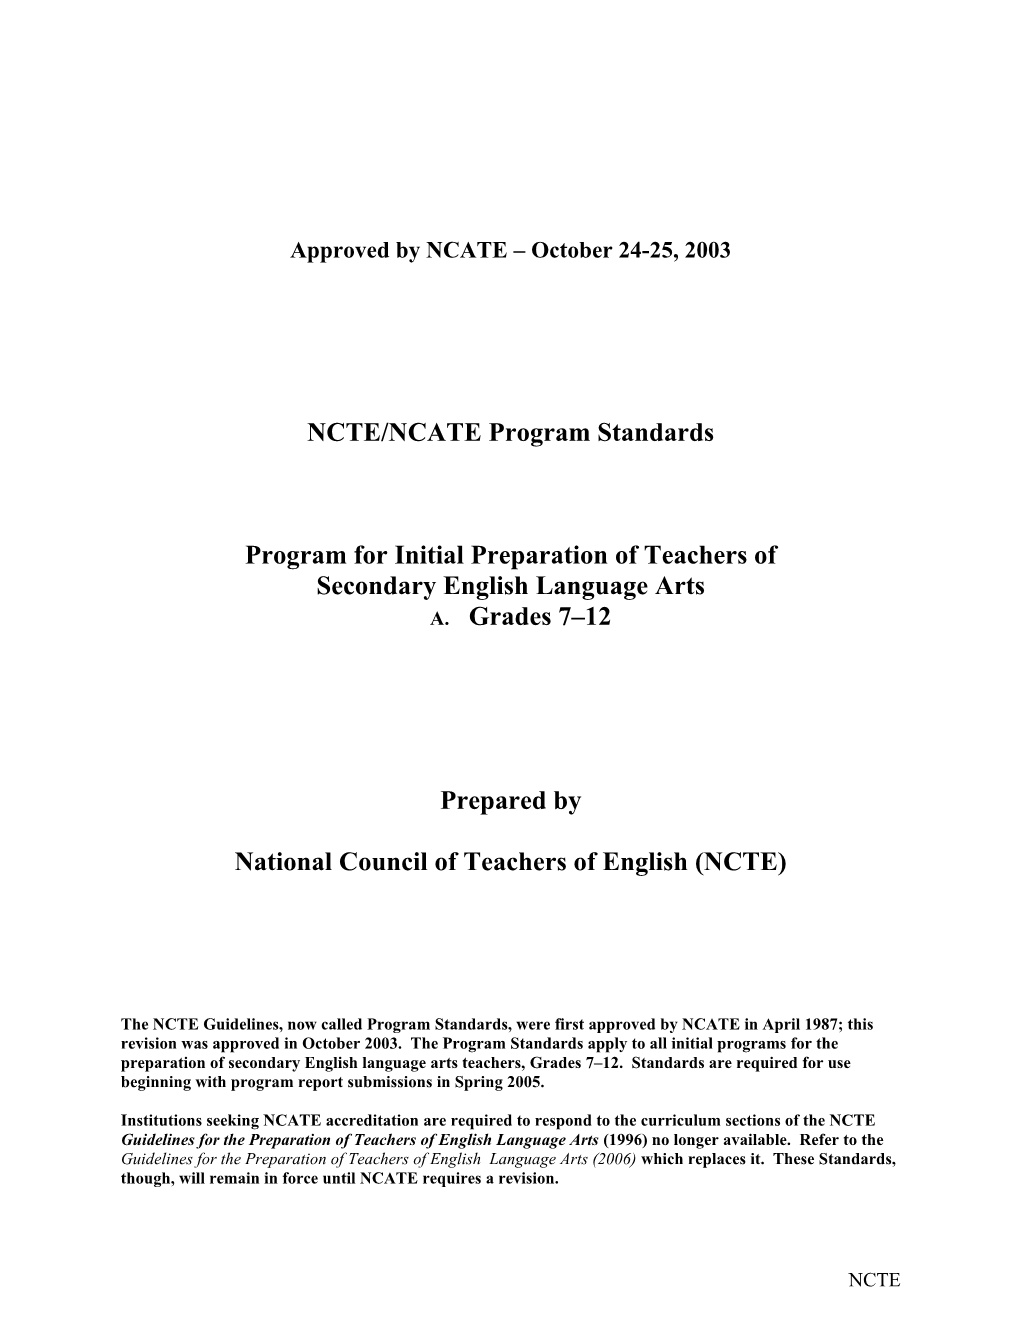 NCTE/NCATE Program Standards